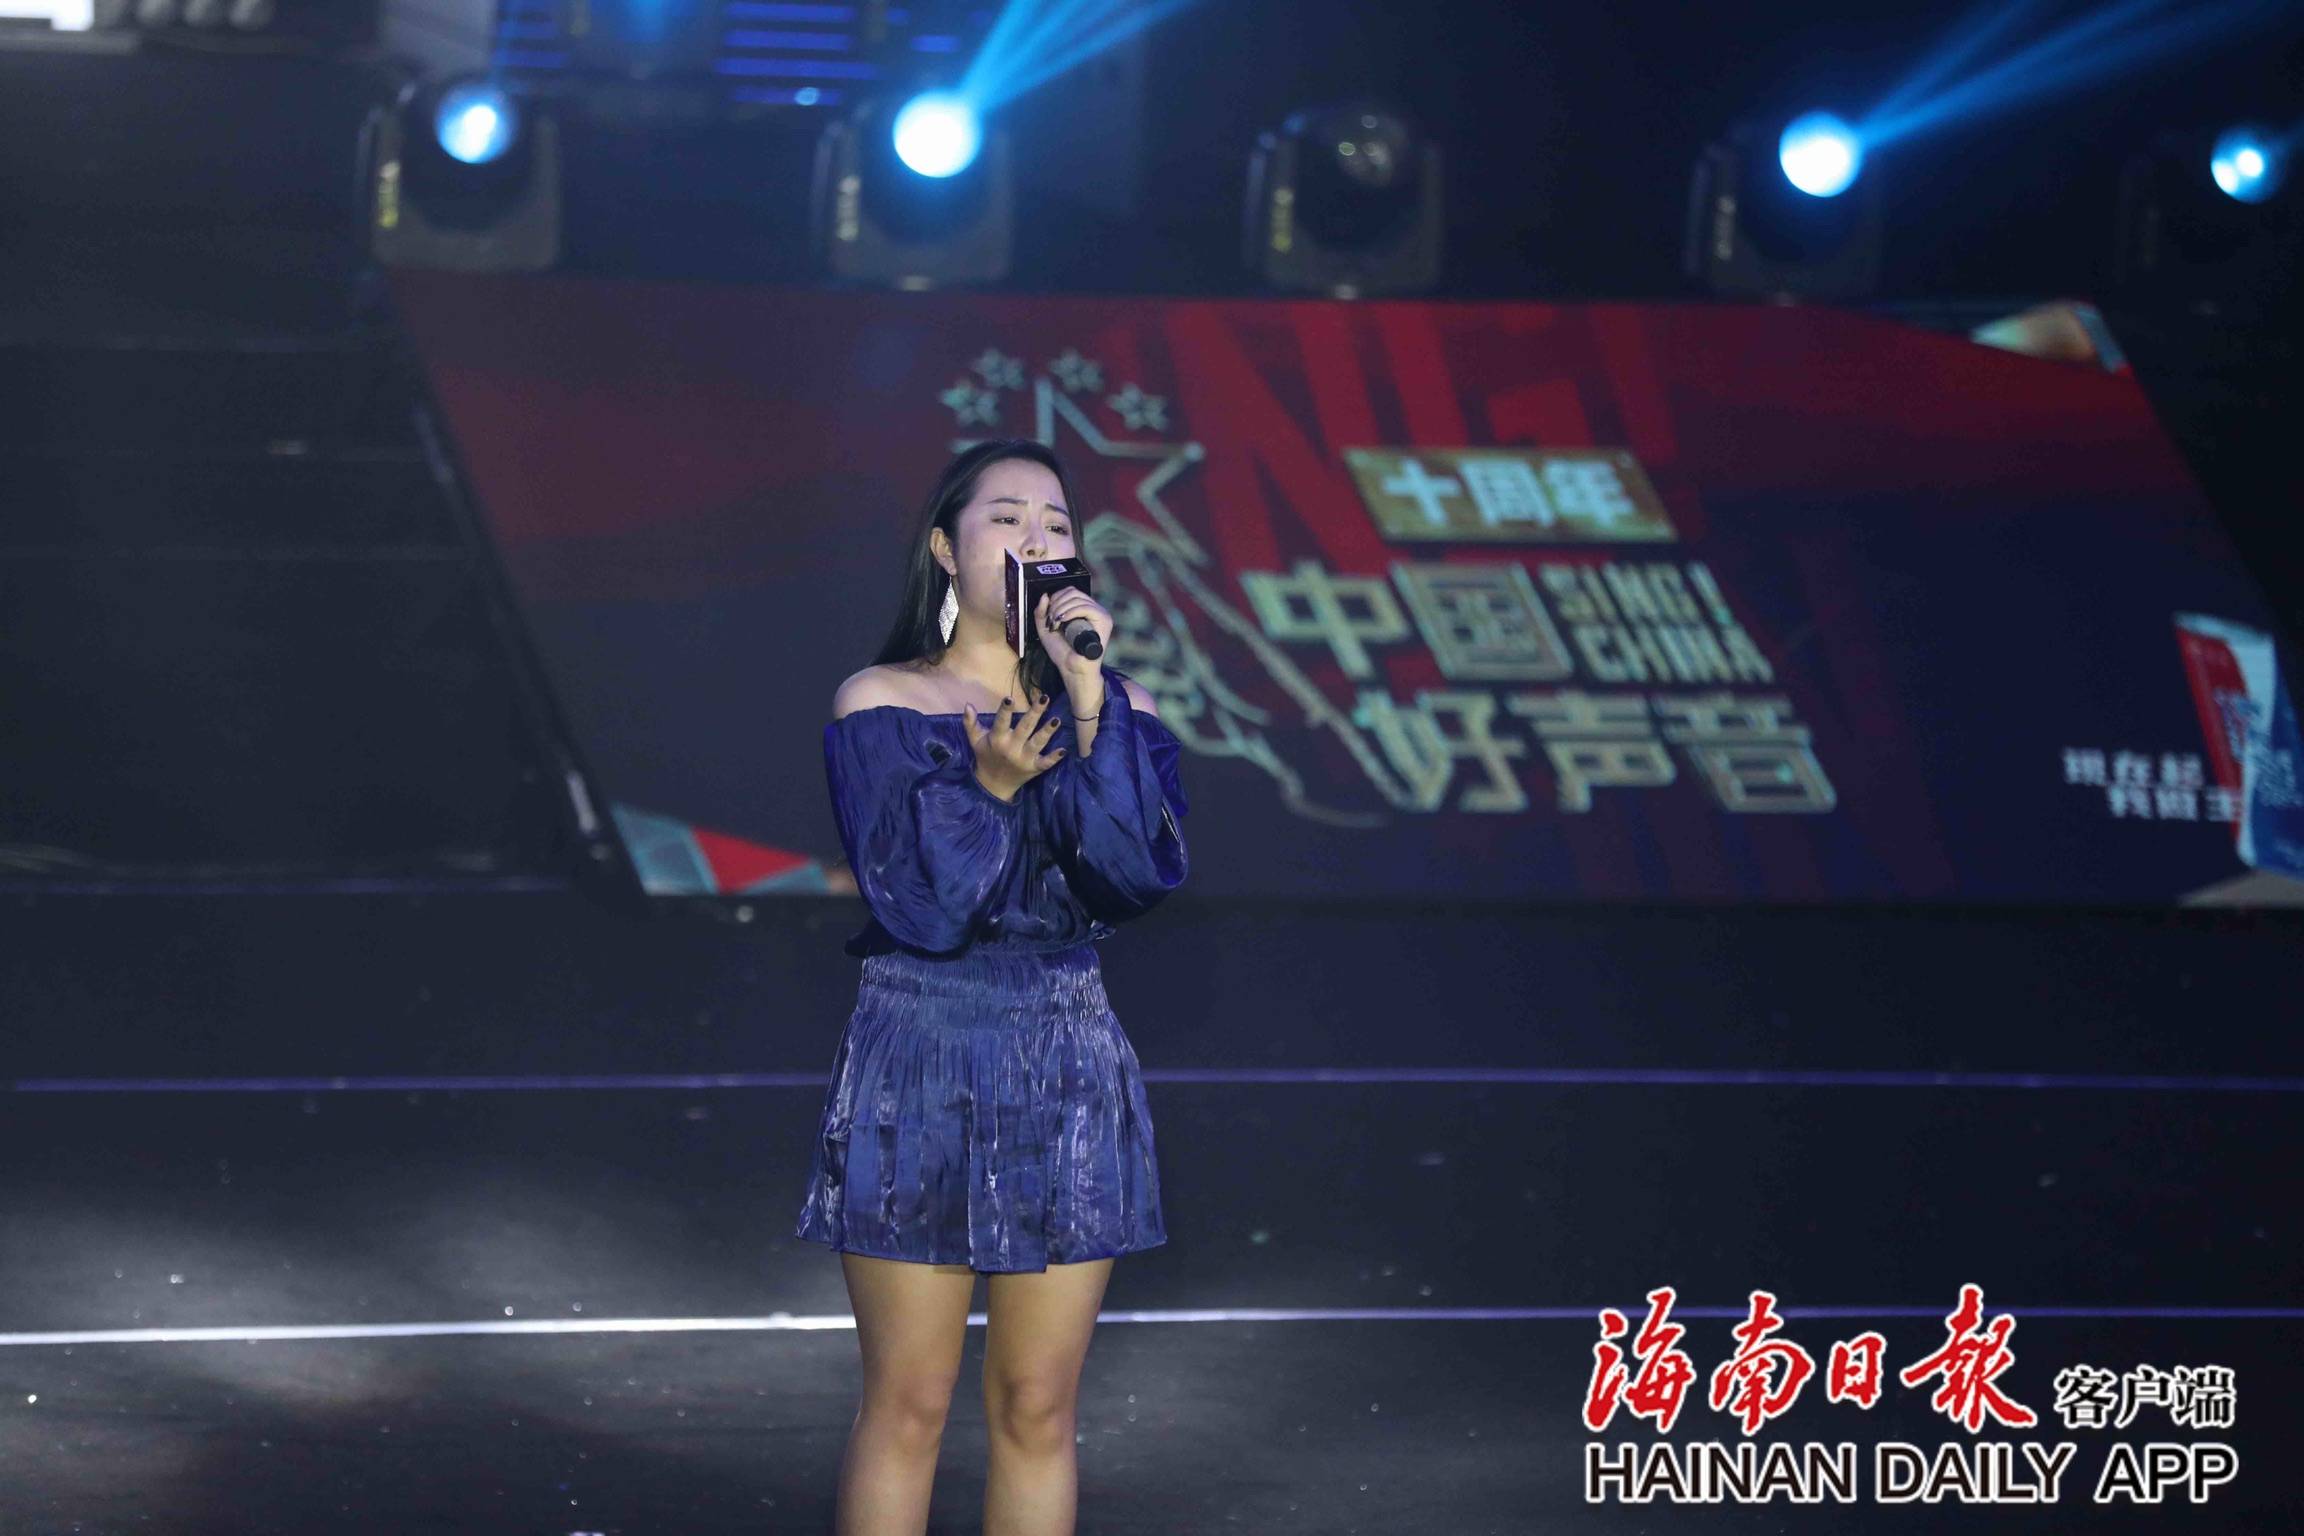 椰牛2021中国好声音十周年音乐盛典海南36名歌手继续为梦想歌唱